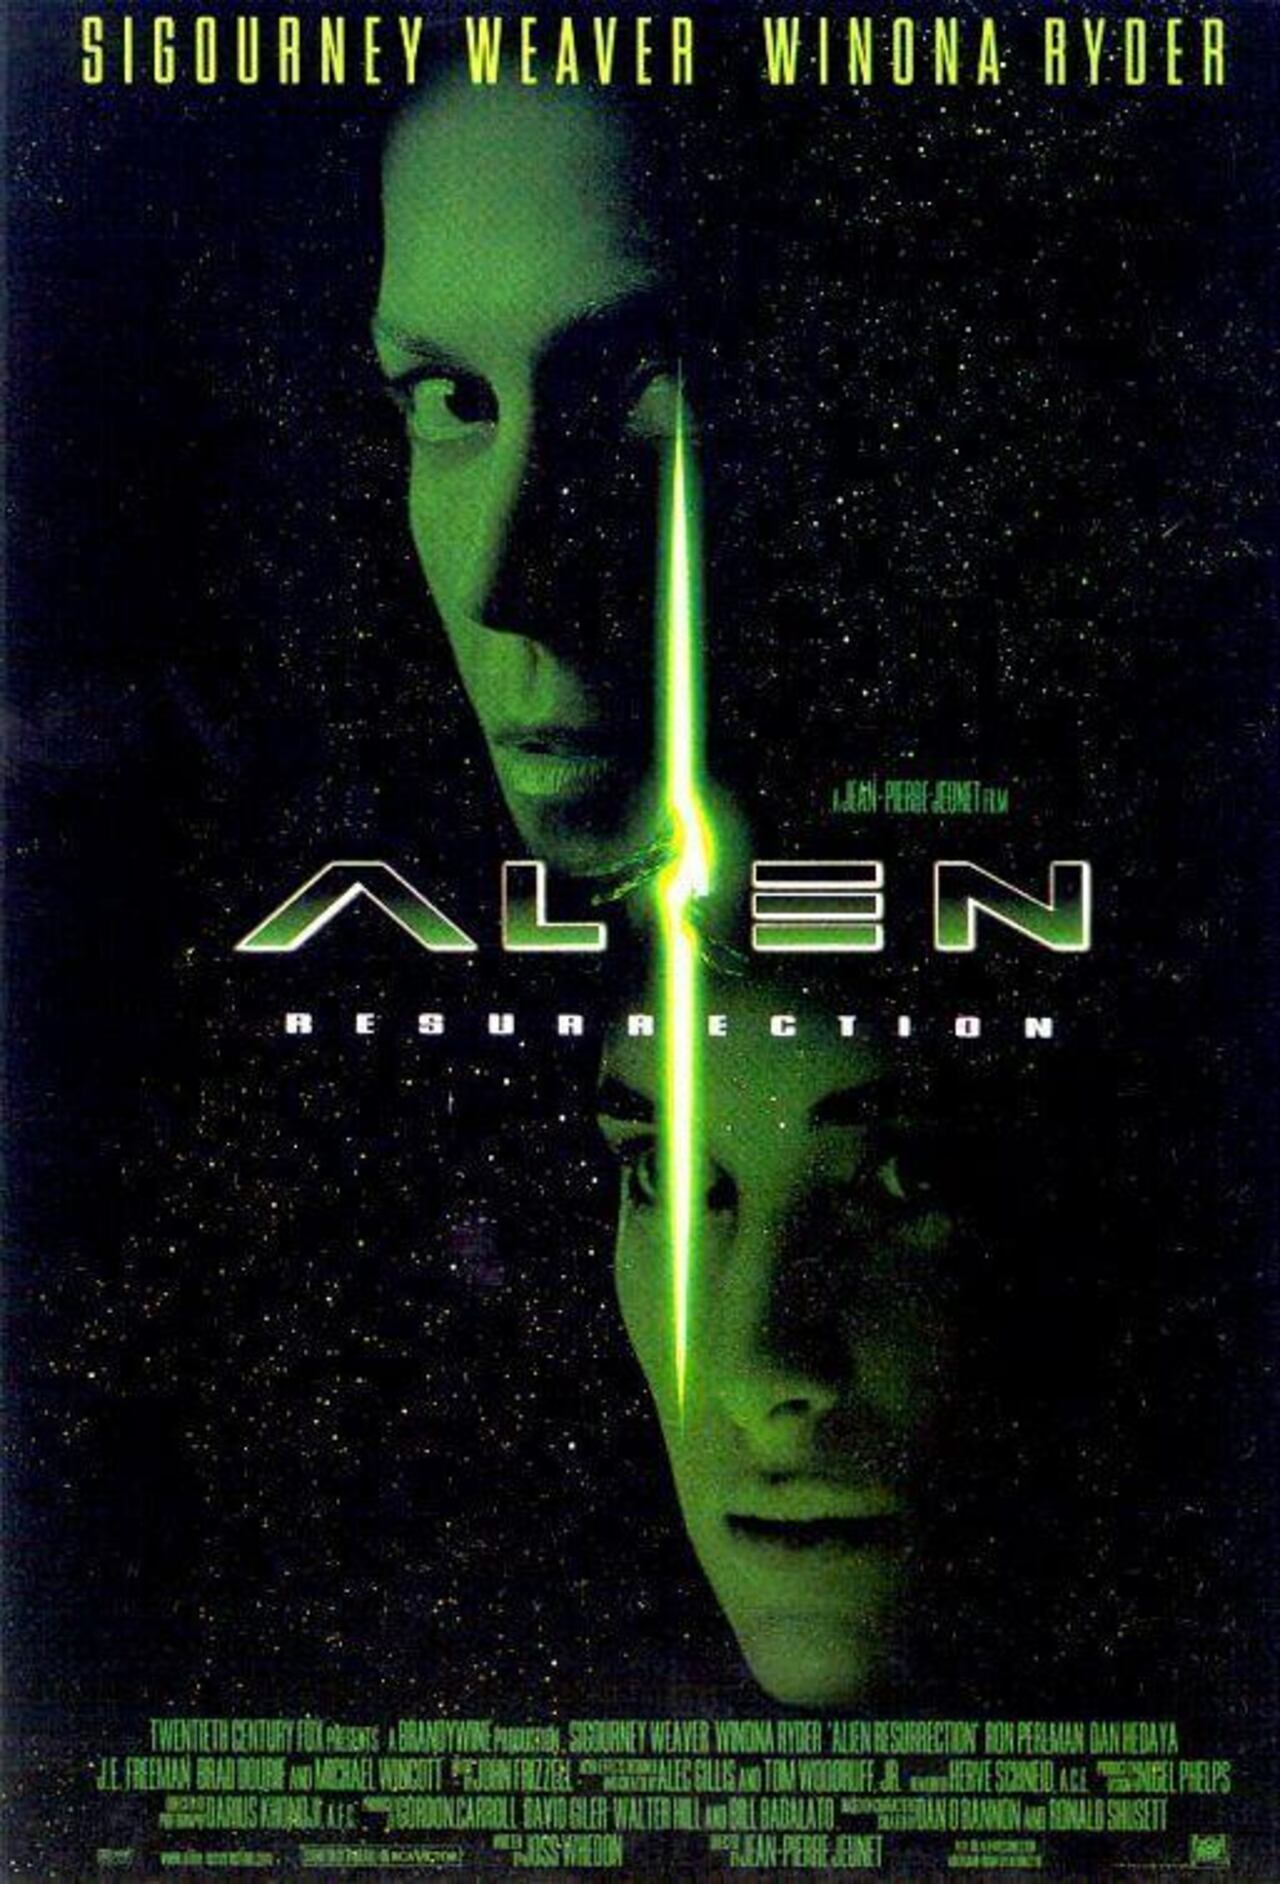 Alien, dirigida por Jean-Pierre Jeunet